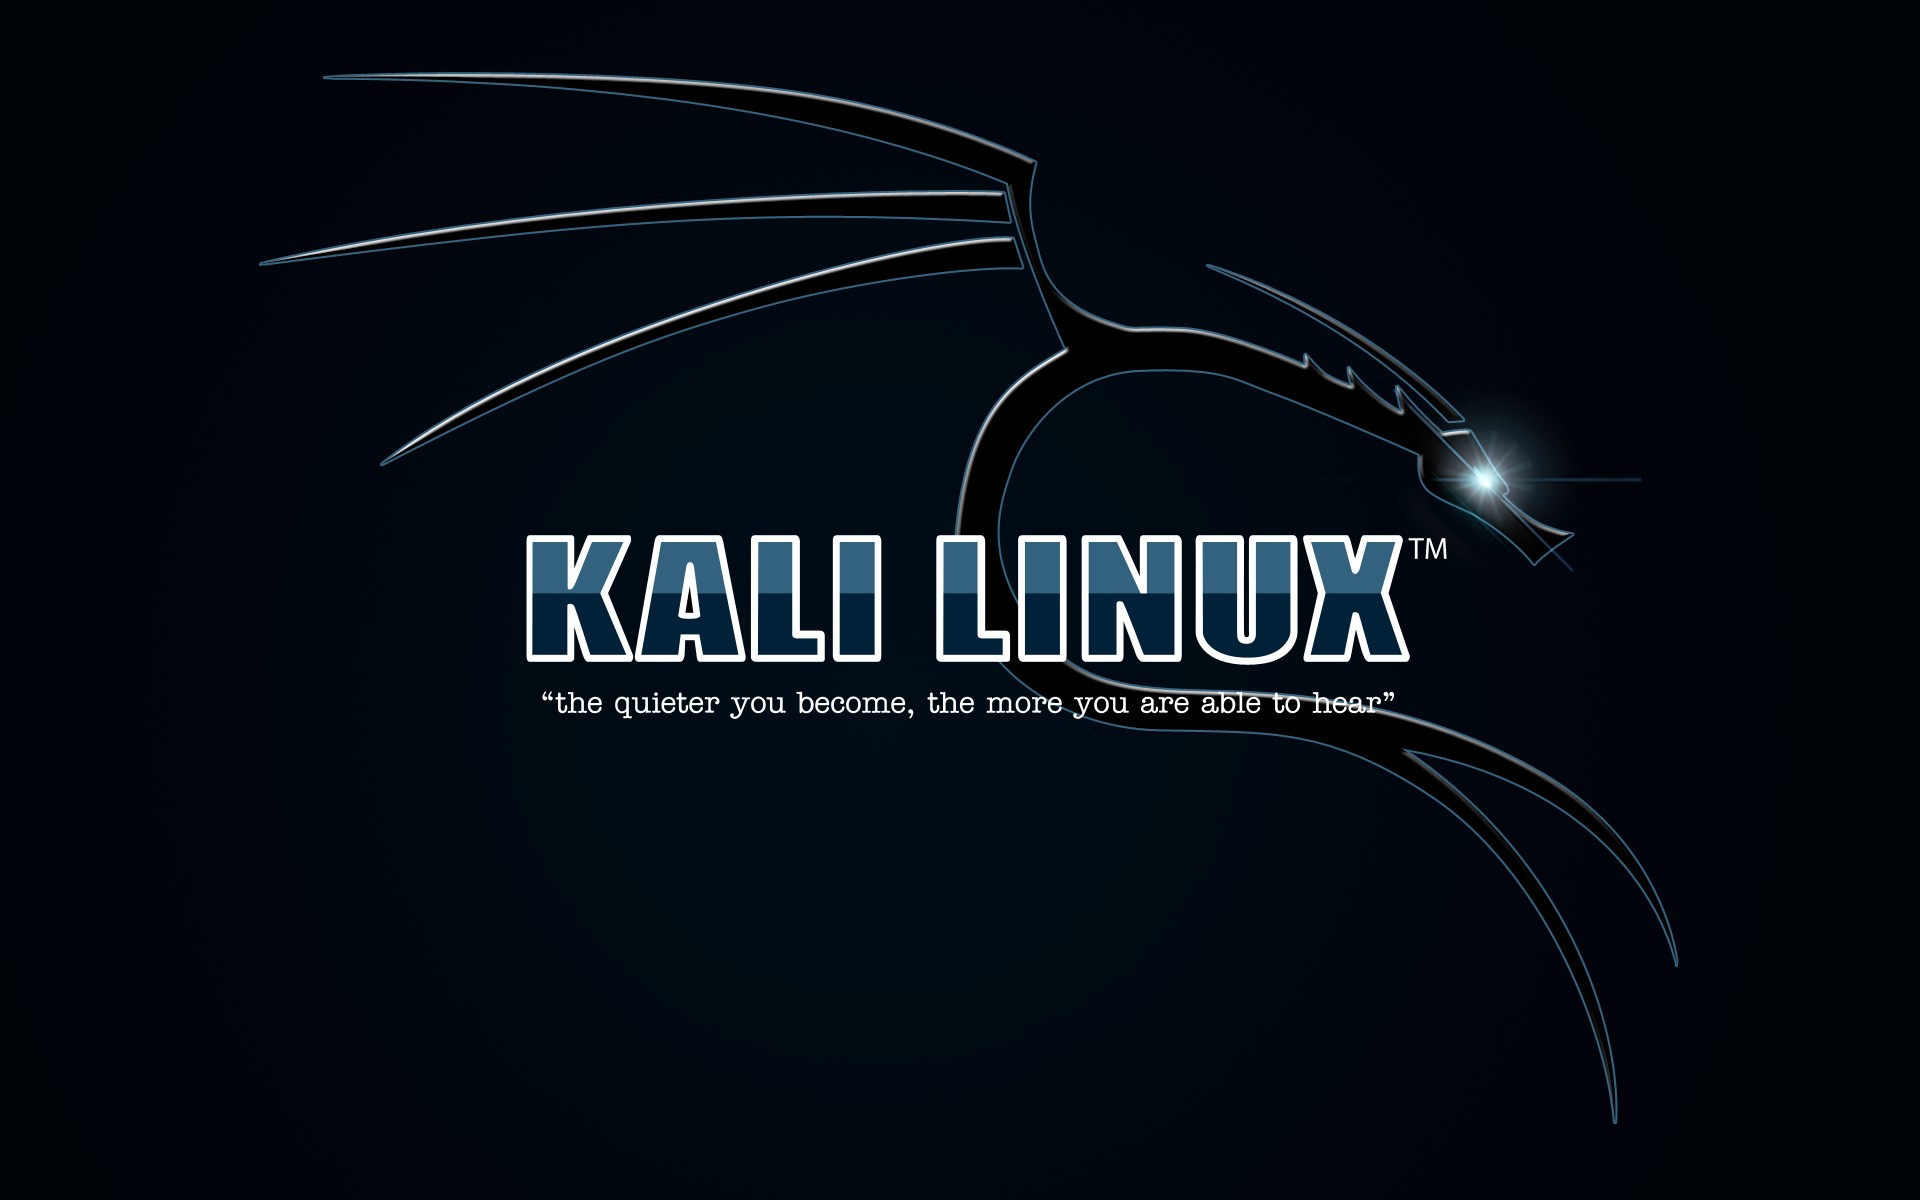 kali linux download